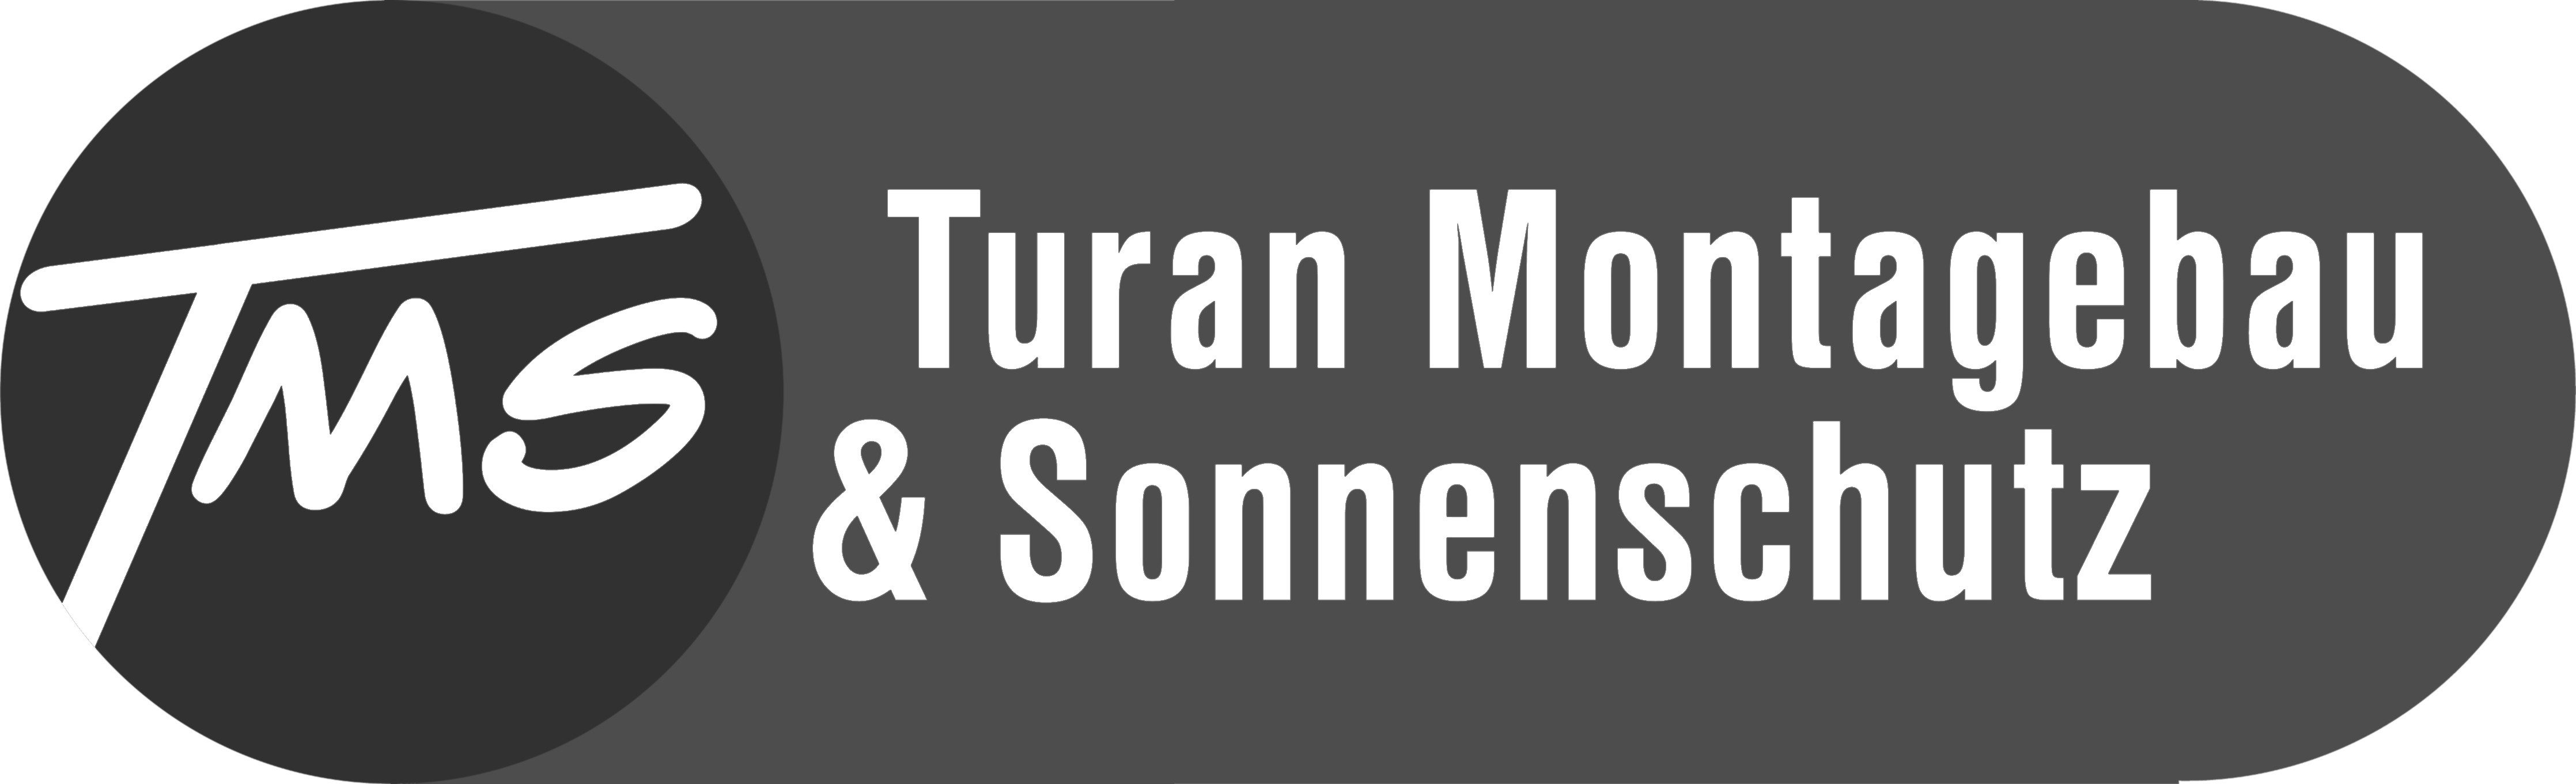 Turan Montagebau & Sonnenschutztechnik